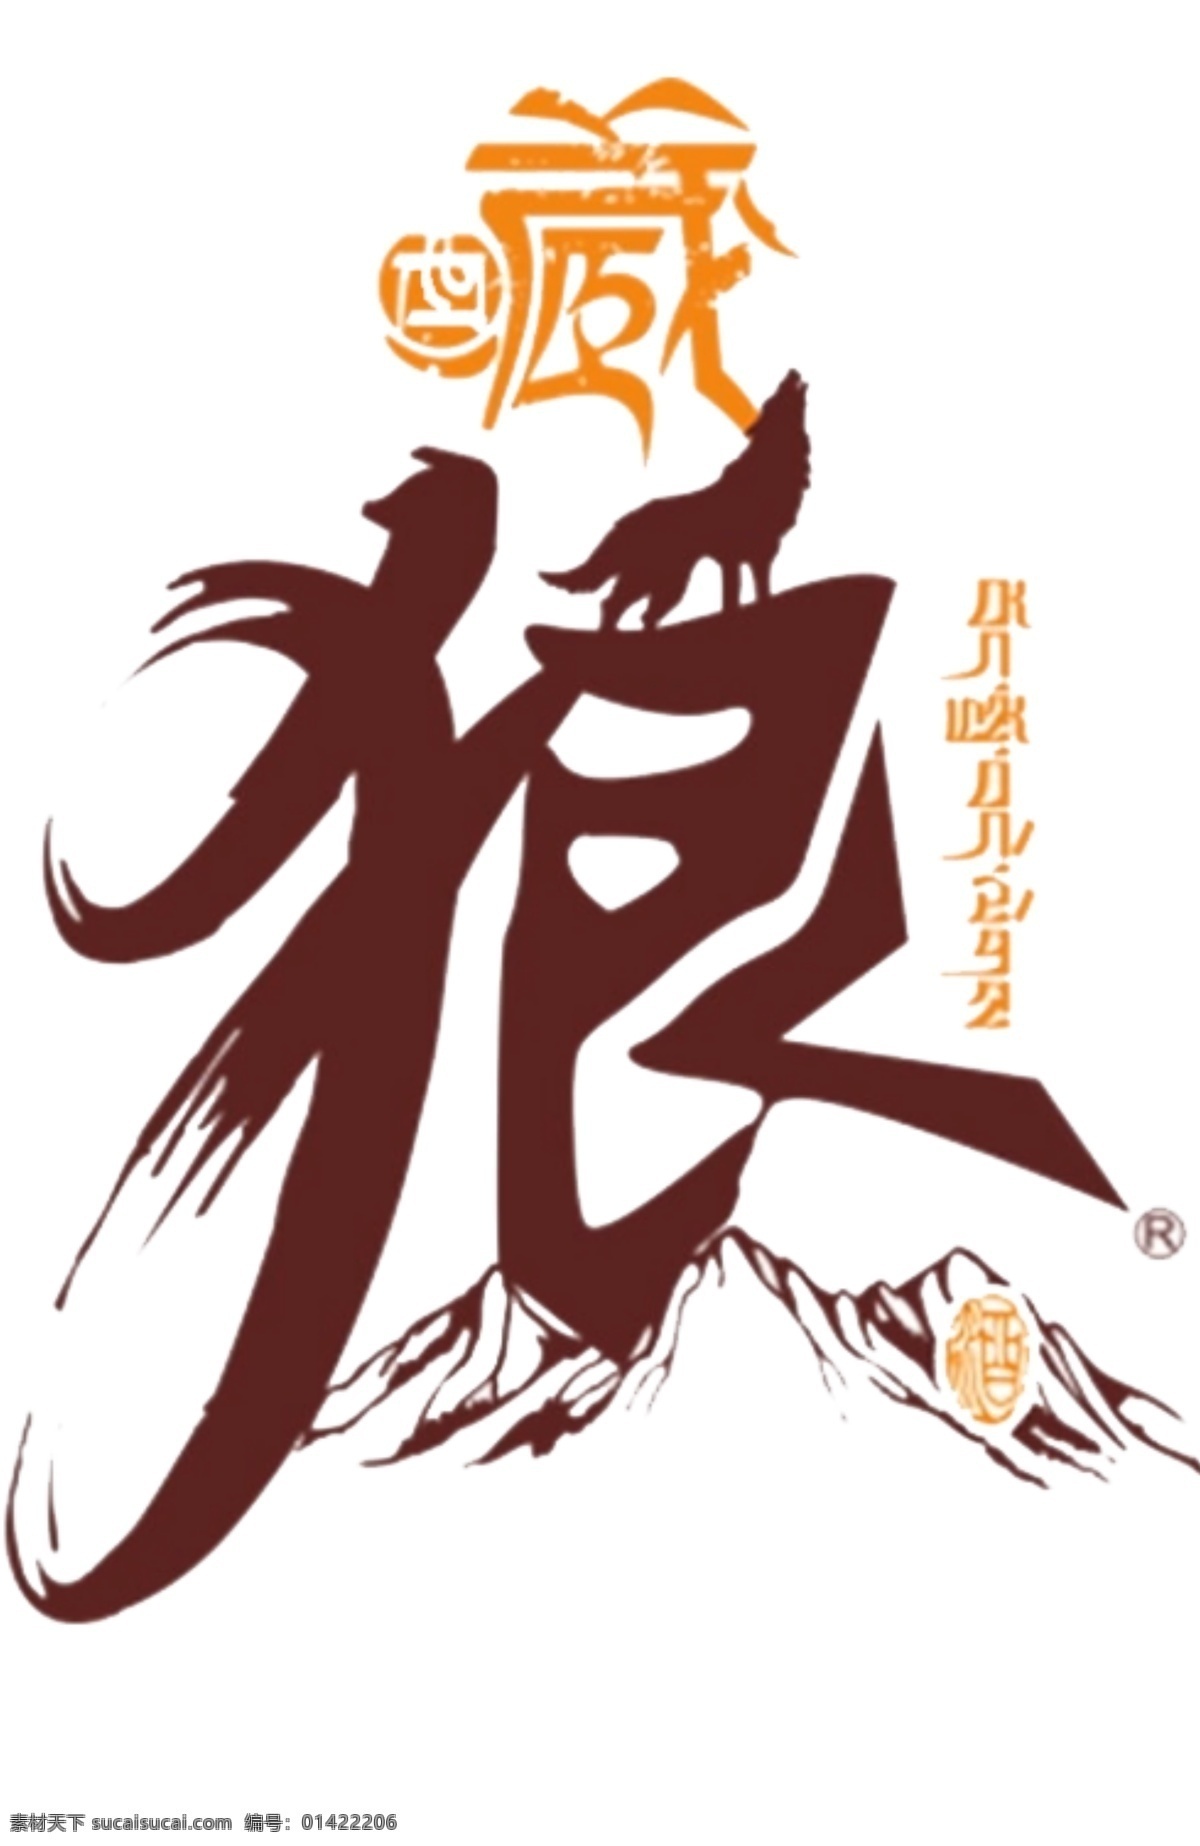 藏 狼 酒 产品 透明 logo 藏狼酒 透明素材 标志图标 企业 标志